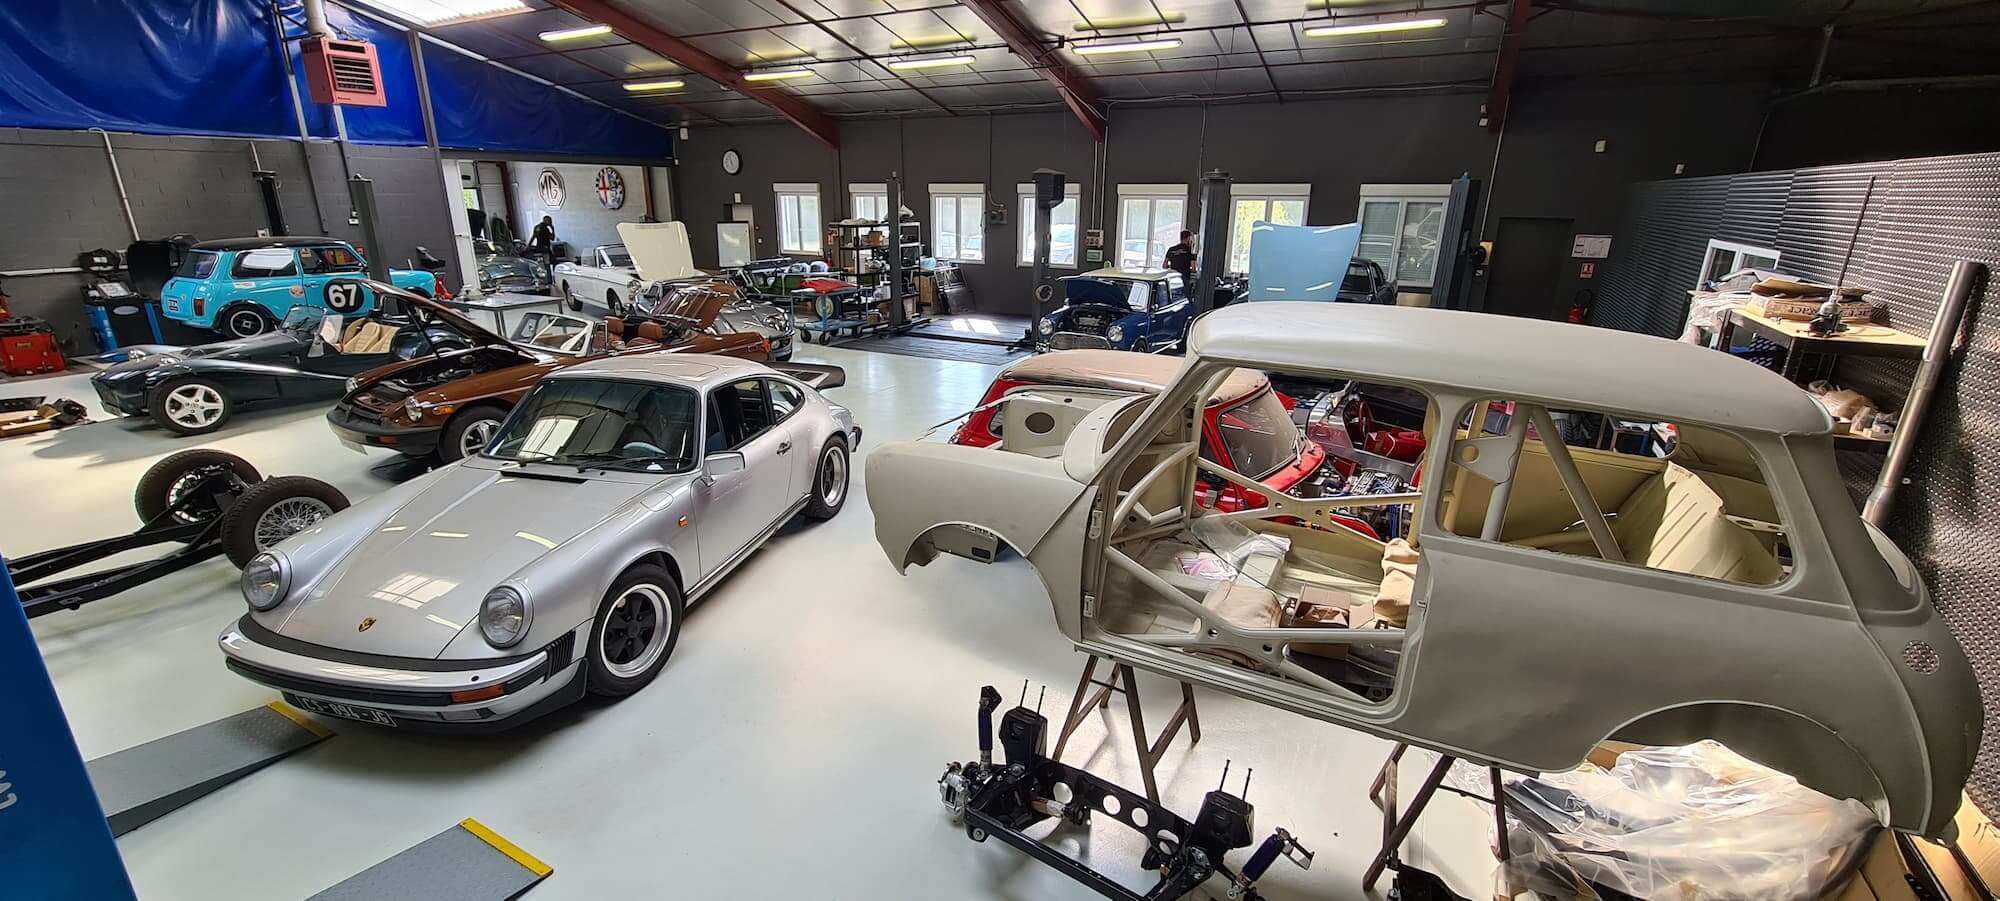 Garage des Damiers - Atelier mécanique - Restoration voitures anciennes - 1275 GT - Porsche 911 - Voitures anglaises